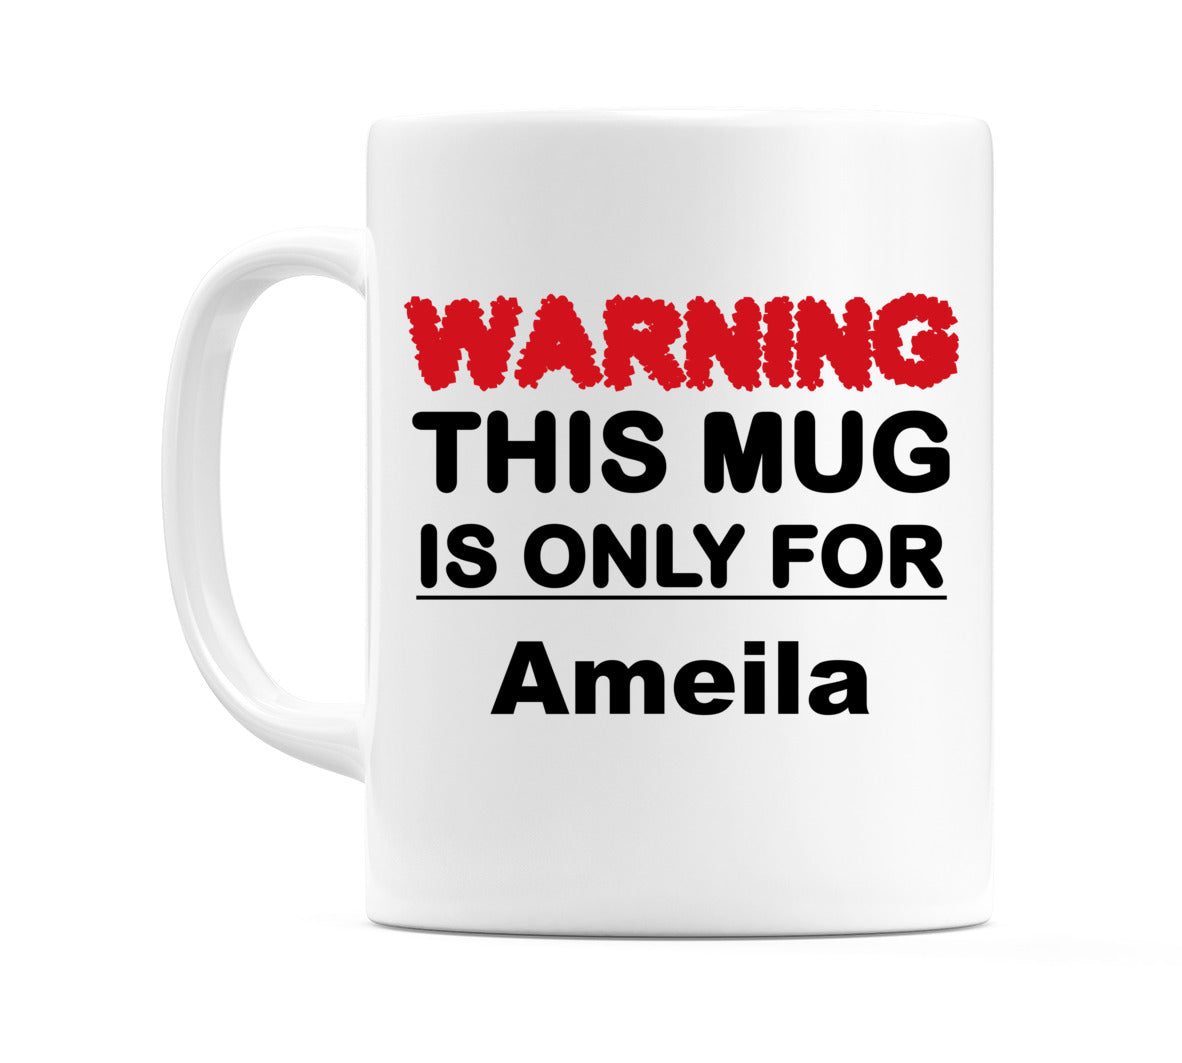 Warning This Mug is ONLY for Ameila Mug